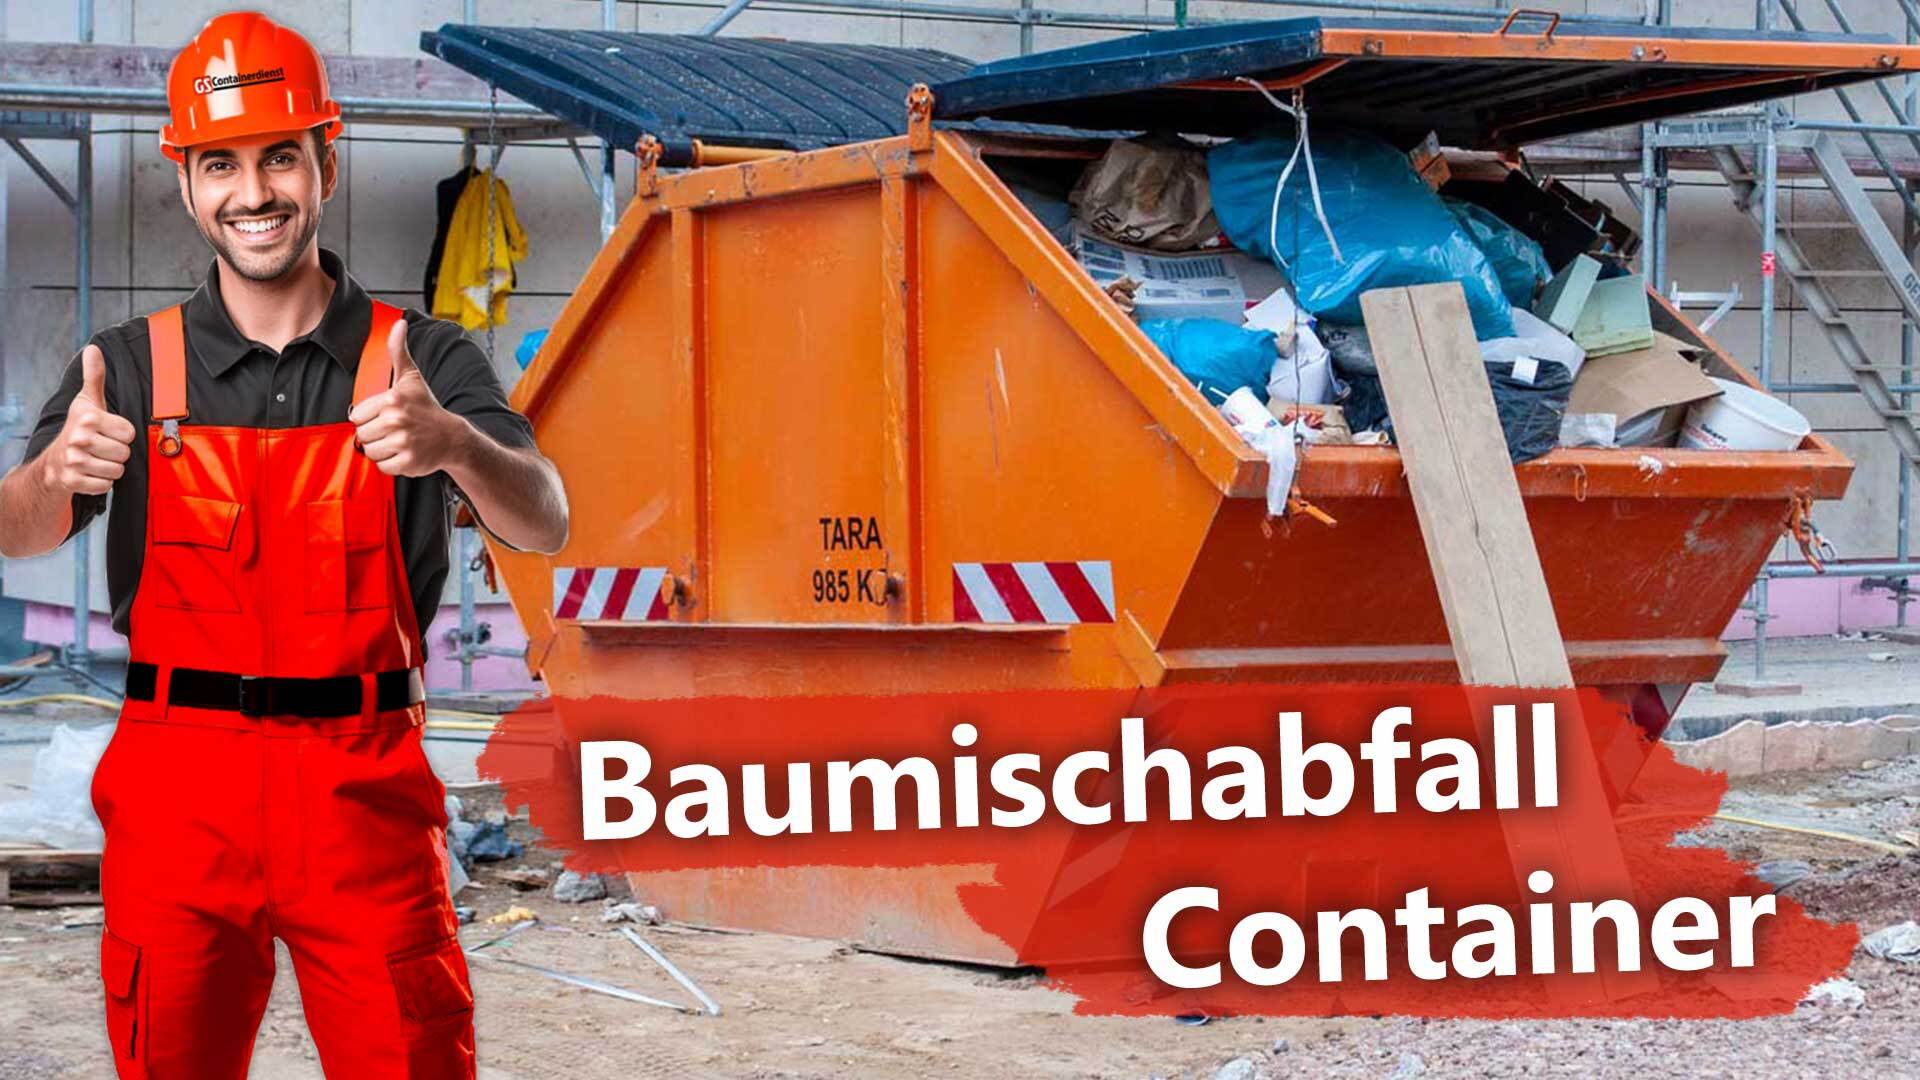 Baumischabfall Entsorgung durch GS Containerdienst in Hanau und Frankfurt